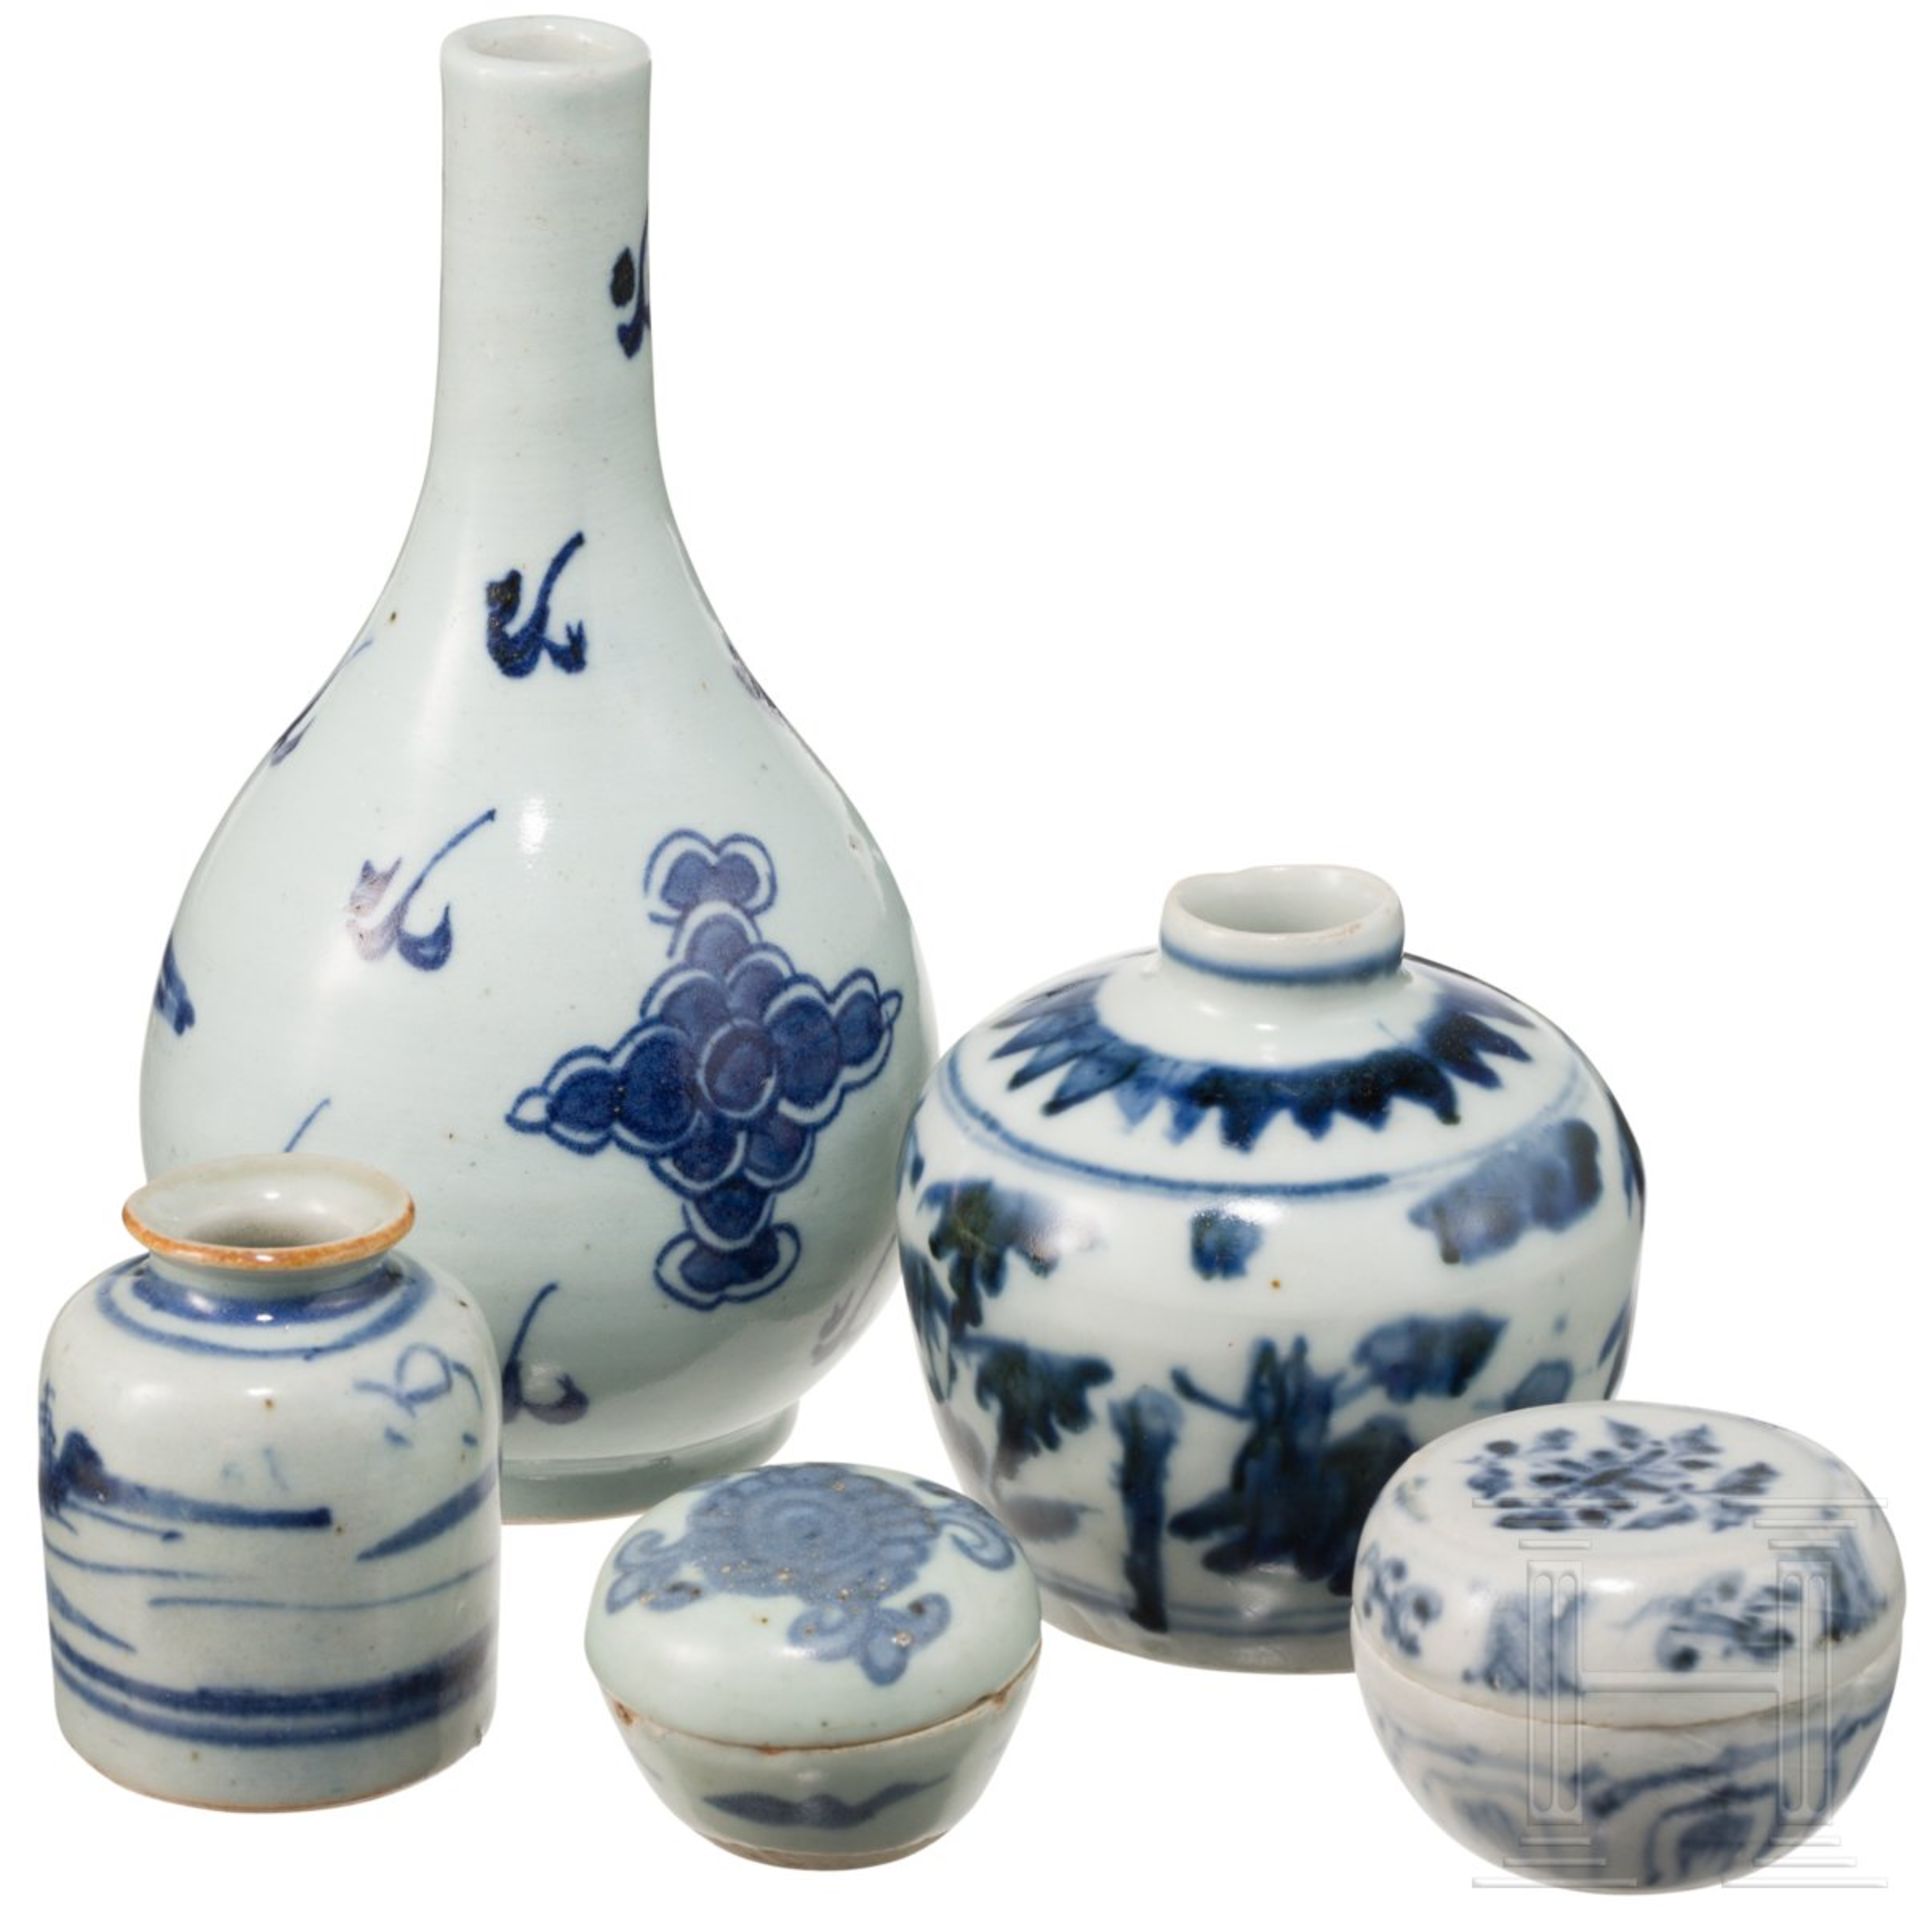 Drei kleine Vasen und zwei Döschen mit weiß-blauer Dekoration, China, 16. - 17. Jhdt. - Image 3 of 3